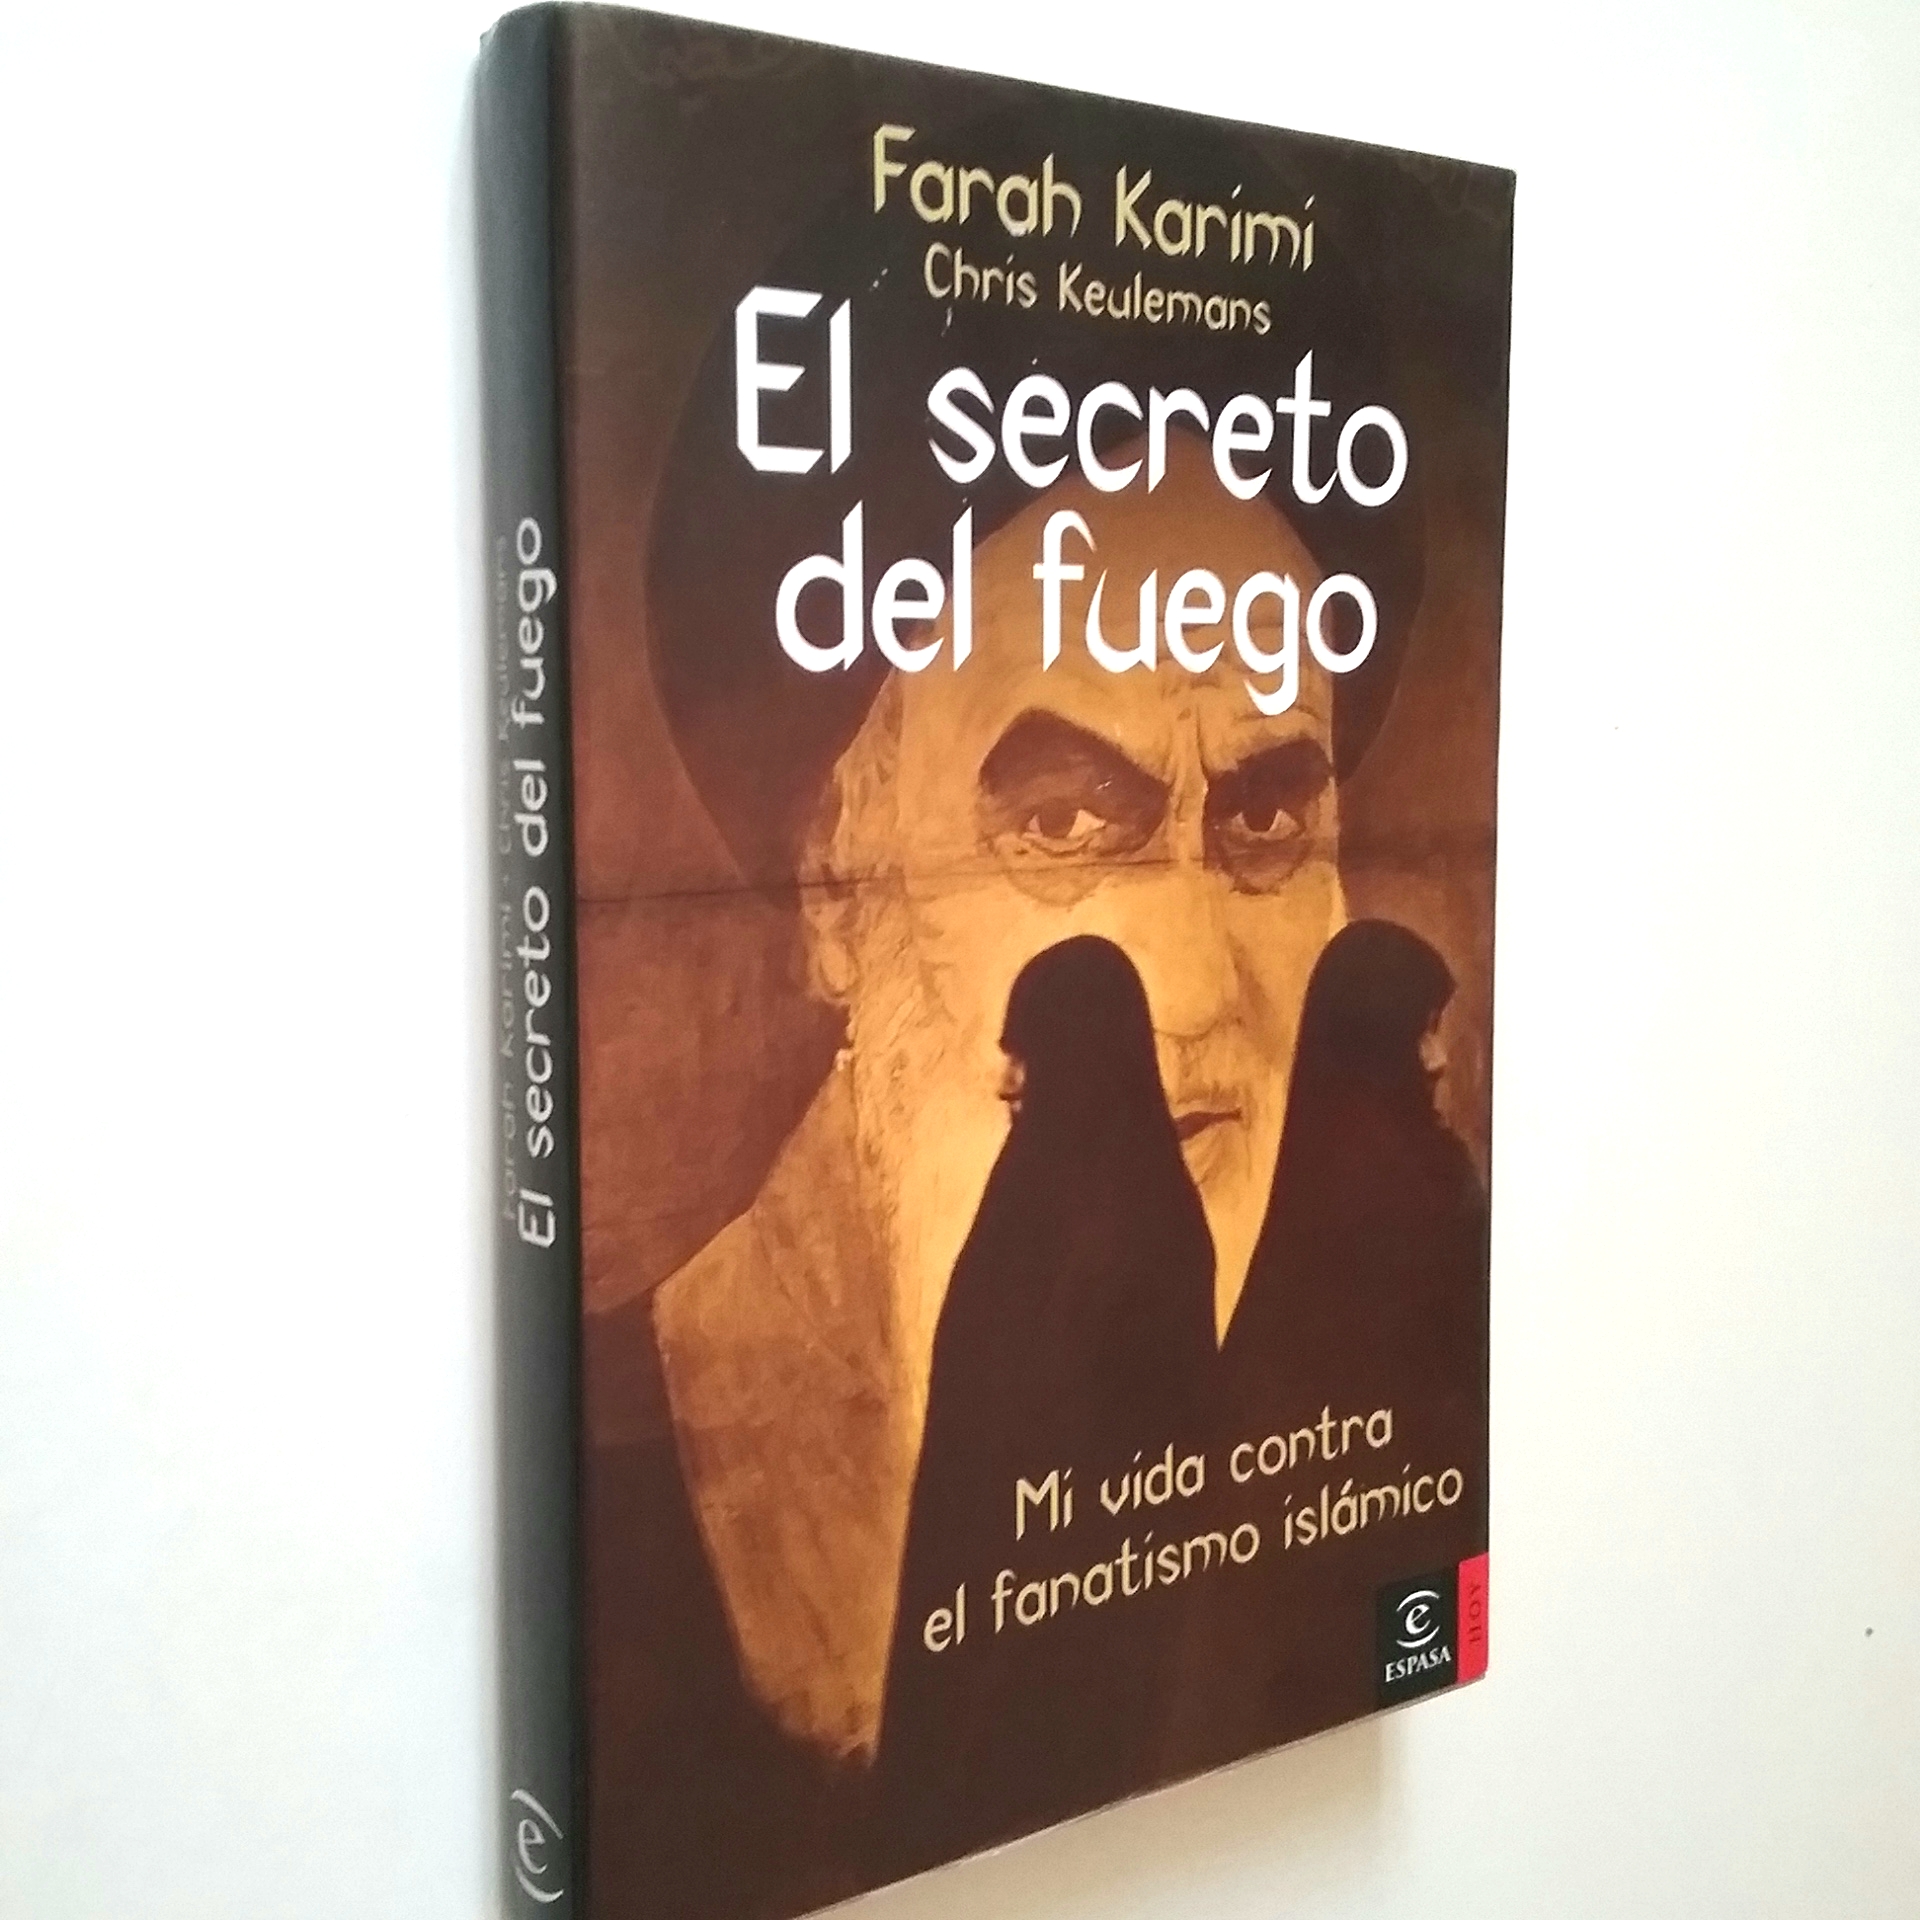 El secreto del fuego. Mi vida contra el fanatismo islámico - Farah Karimi - Chris Keulemans